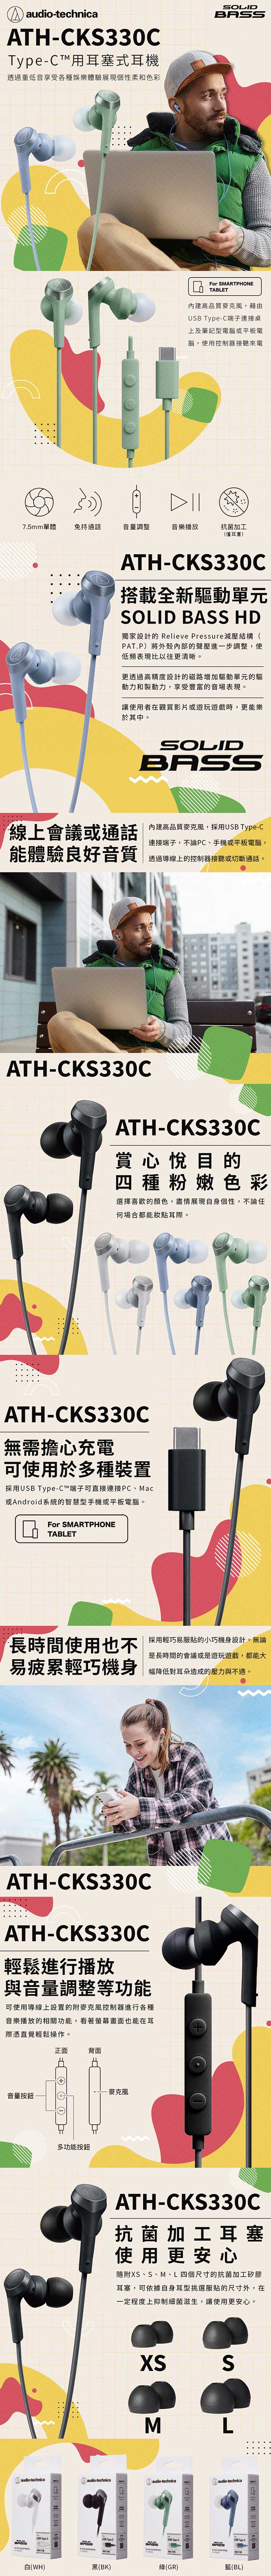 audio-technica-鐵三角-ATH-CKS330C-內.jpg